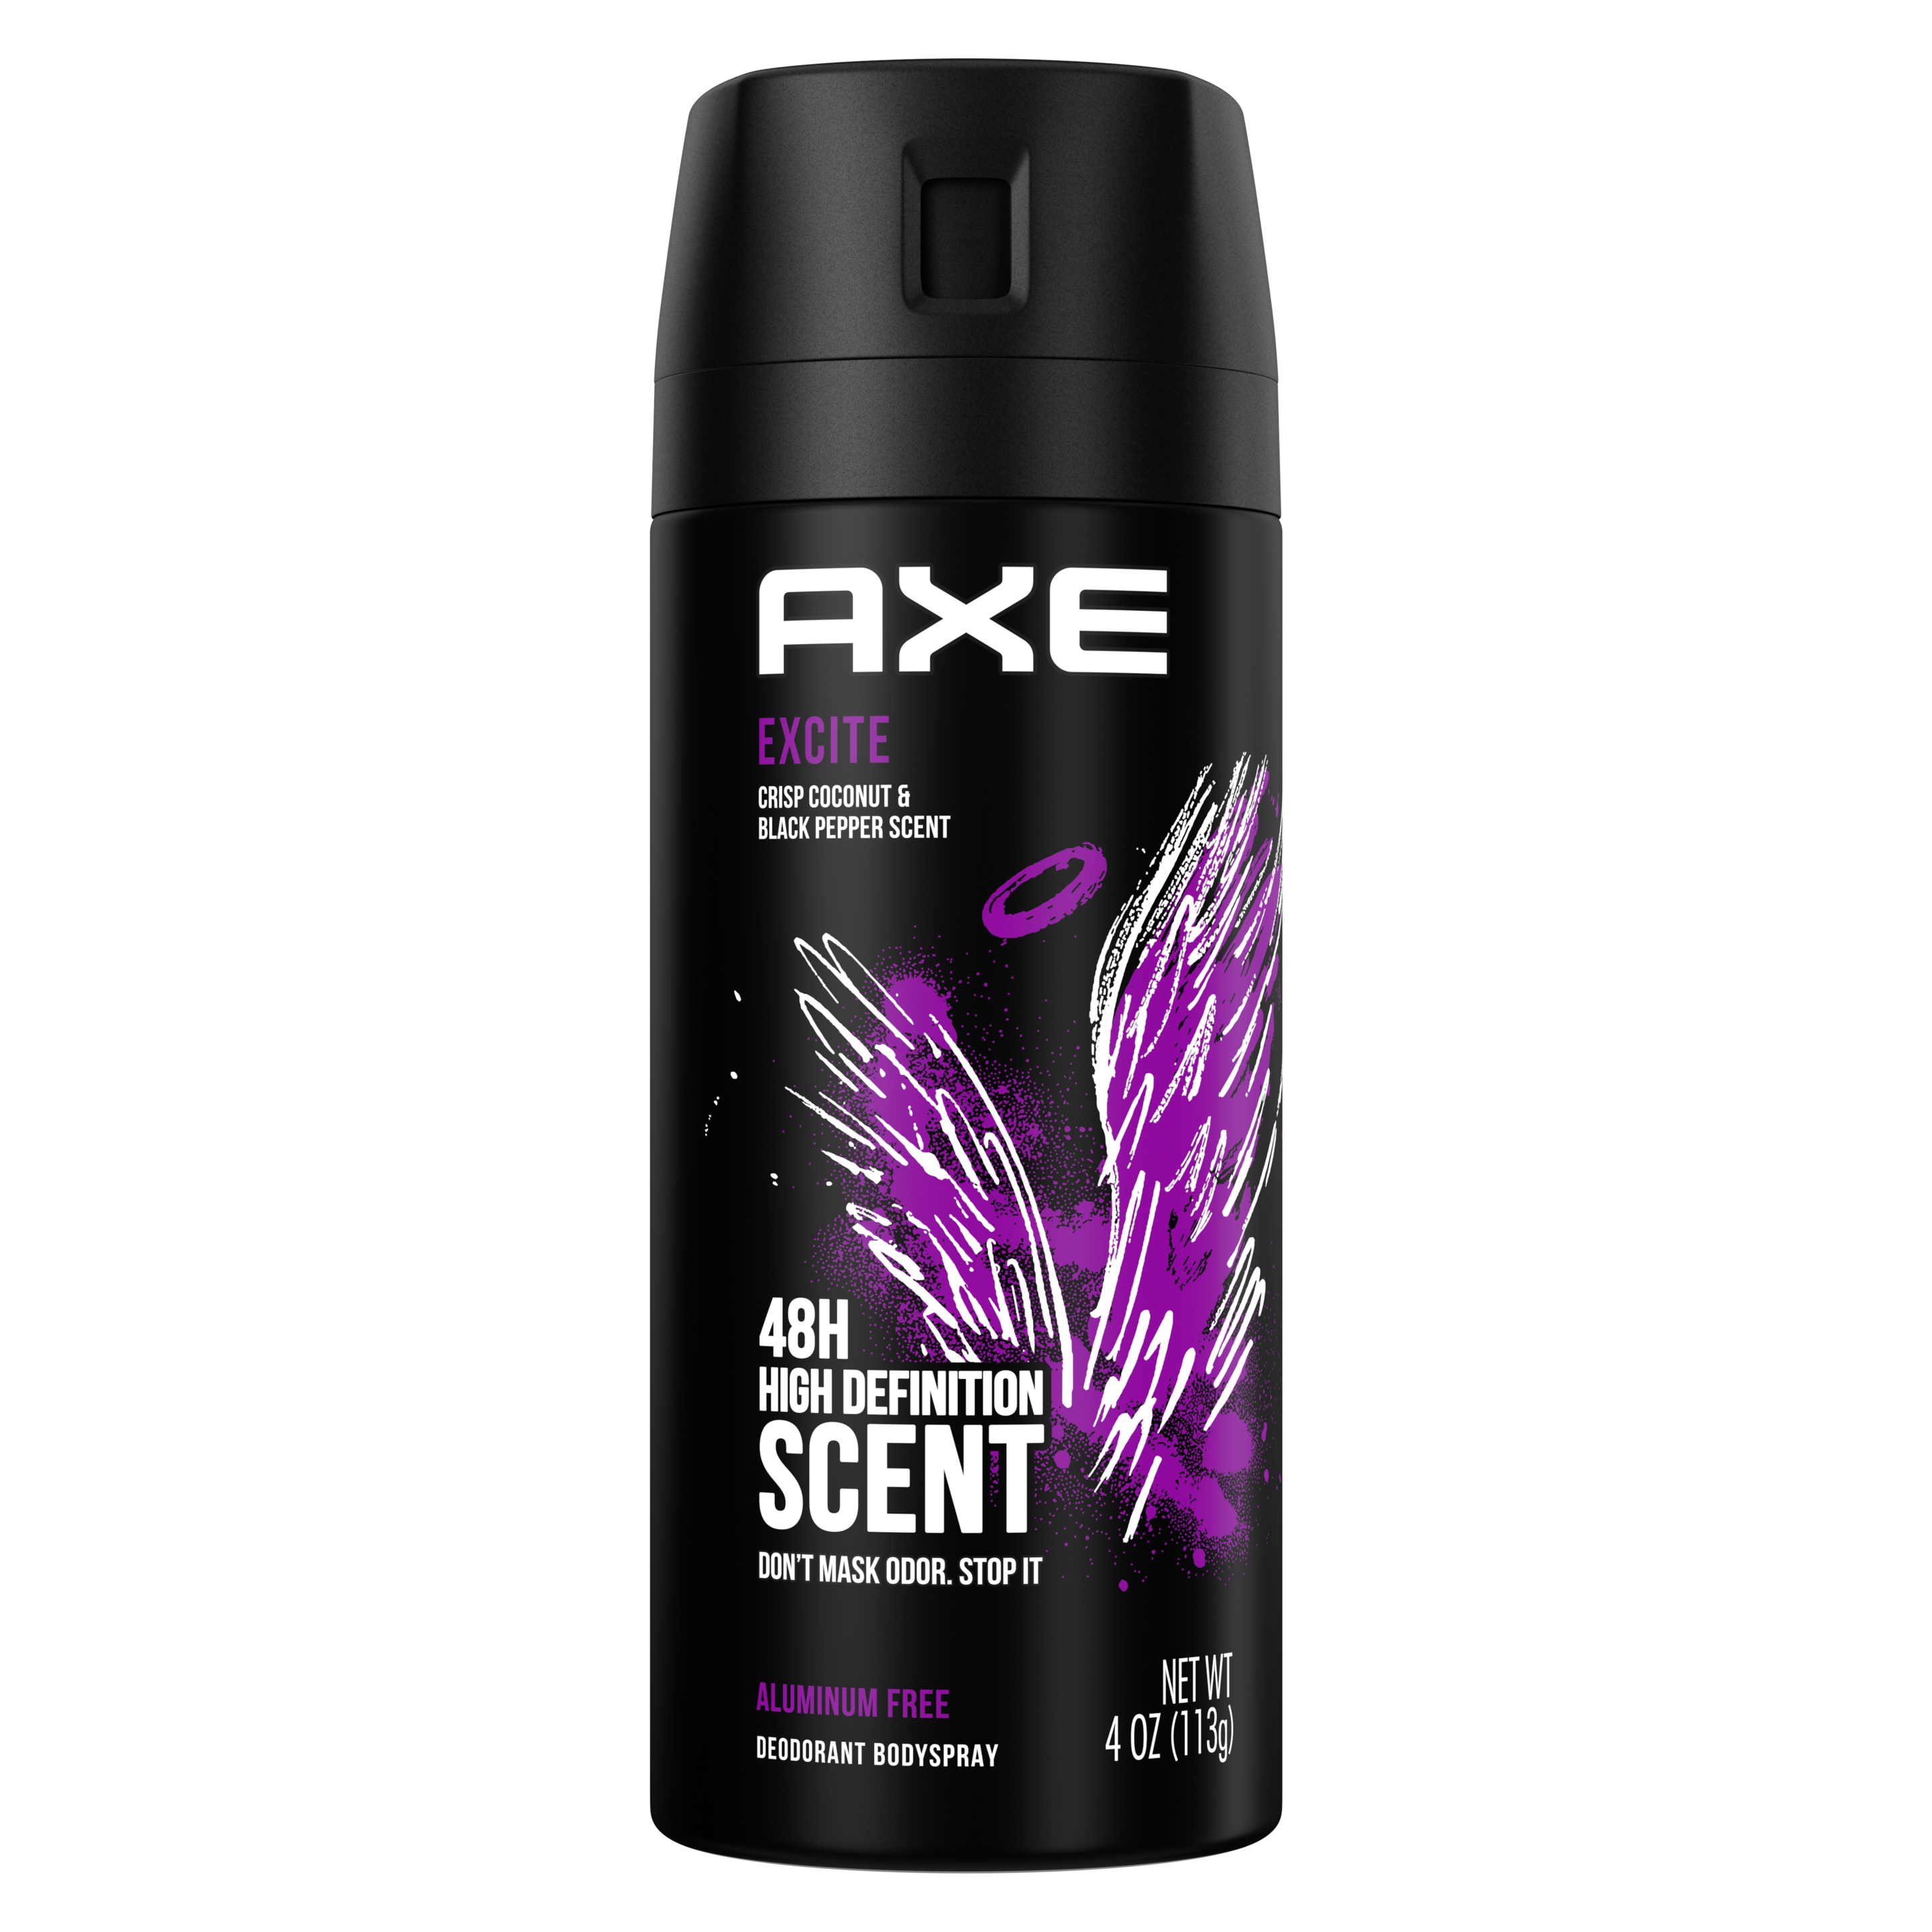 Chill Deodorant Body Spray Axe